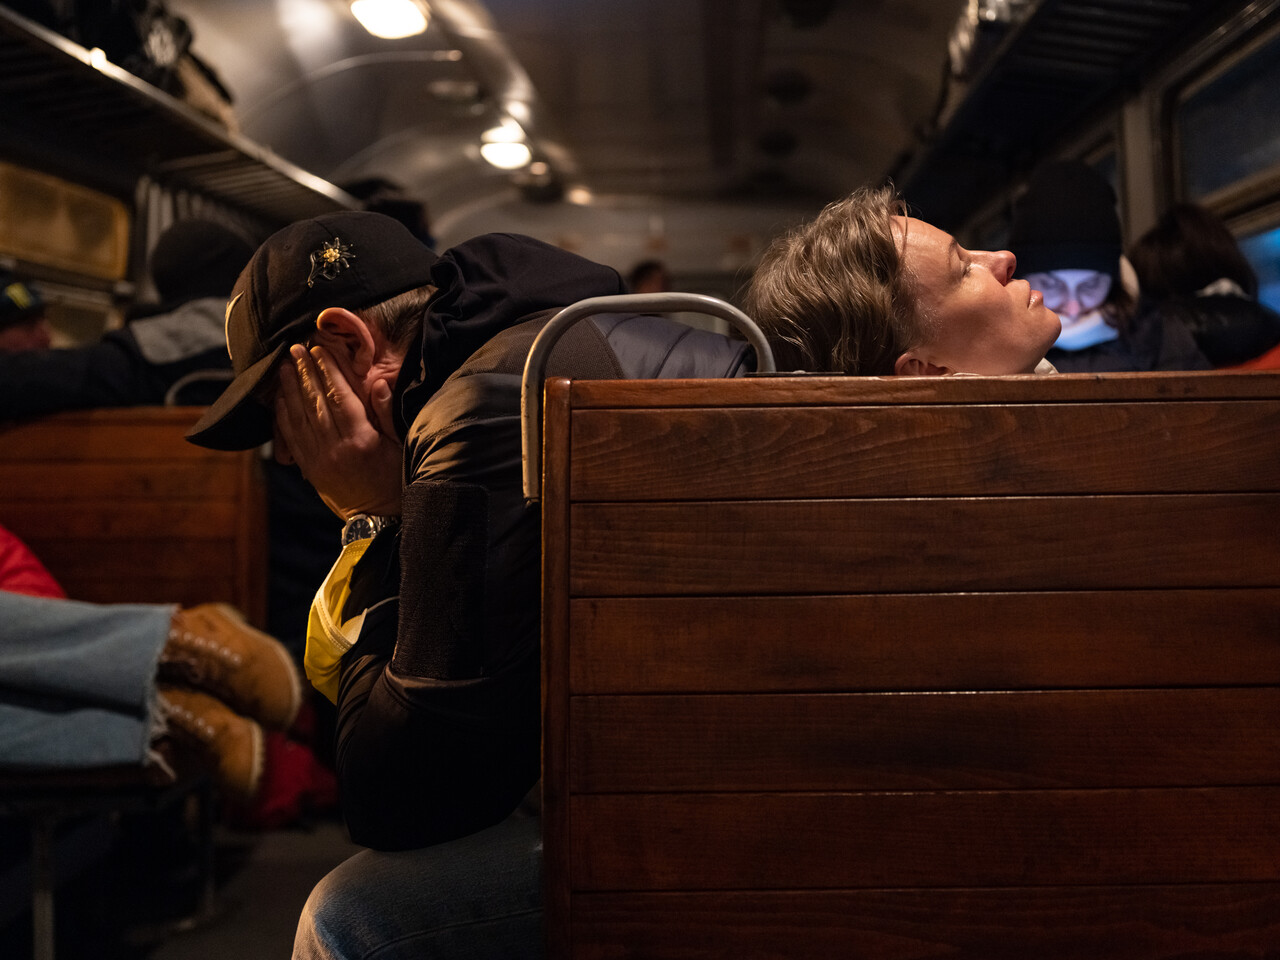 3월 5일, 폴란드 프셰미실에서 우크라이나 르비우로 가는 기차 안에서 우크라이나인 부부가 생각에 빠져있다. ⓒ 장진영